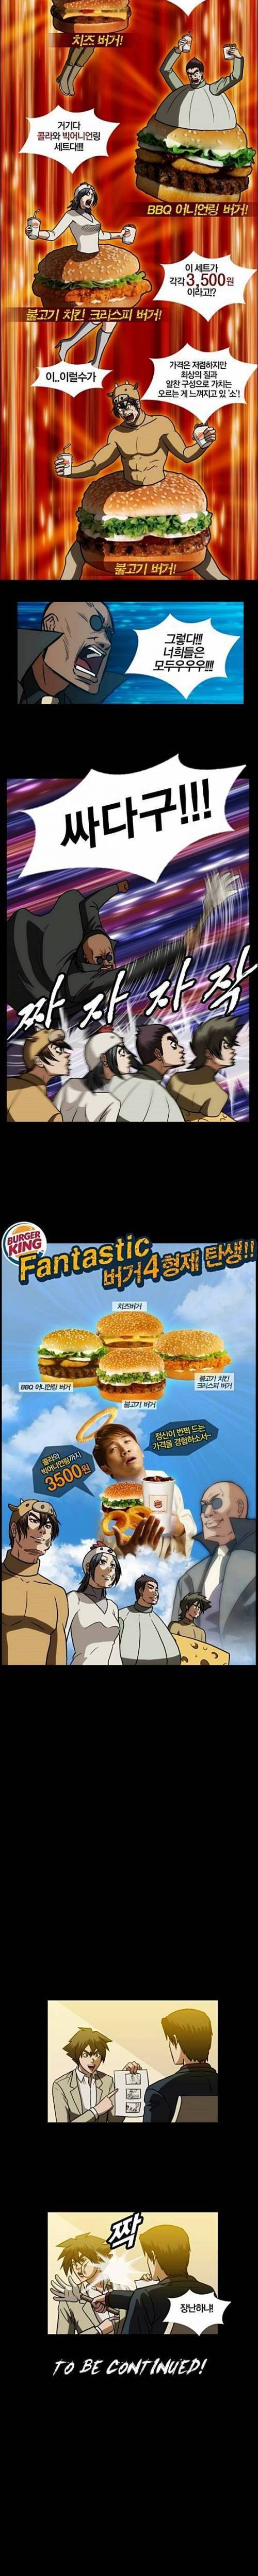 흔한 햄버거 광고.jpg